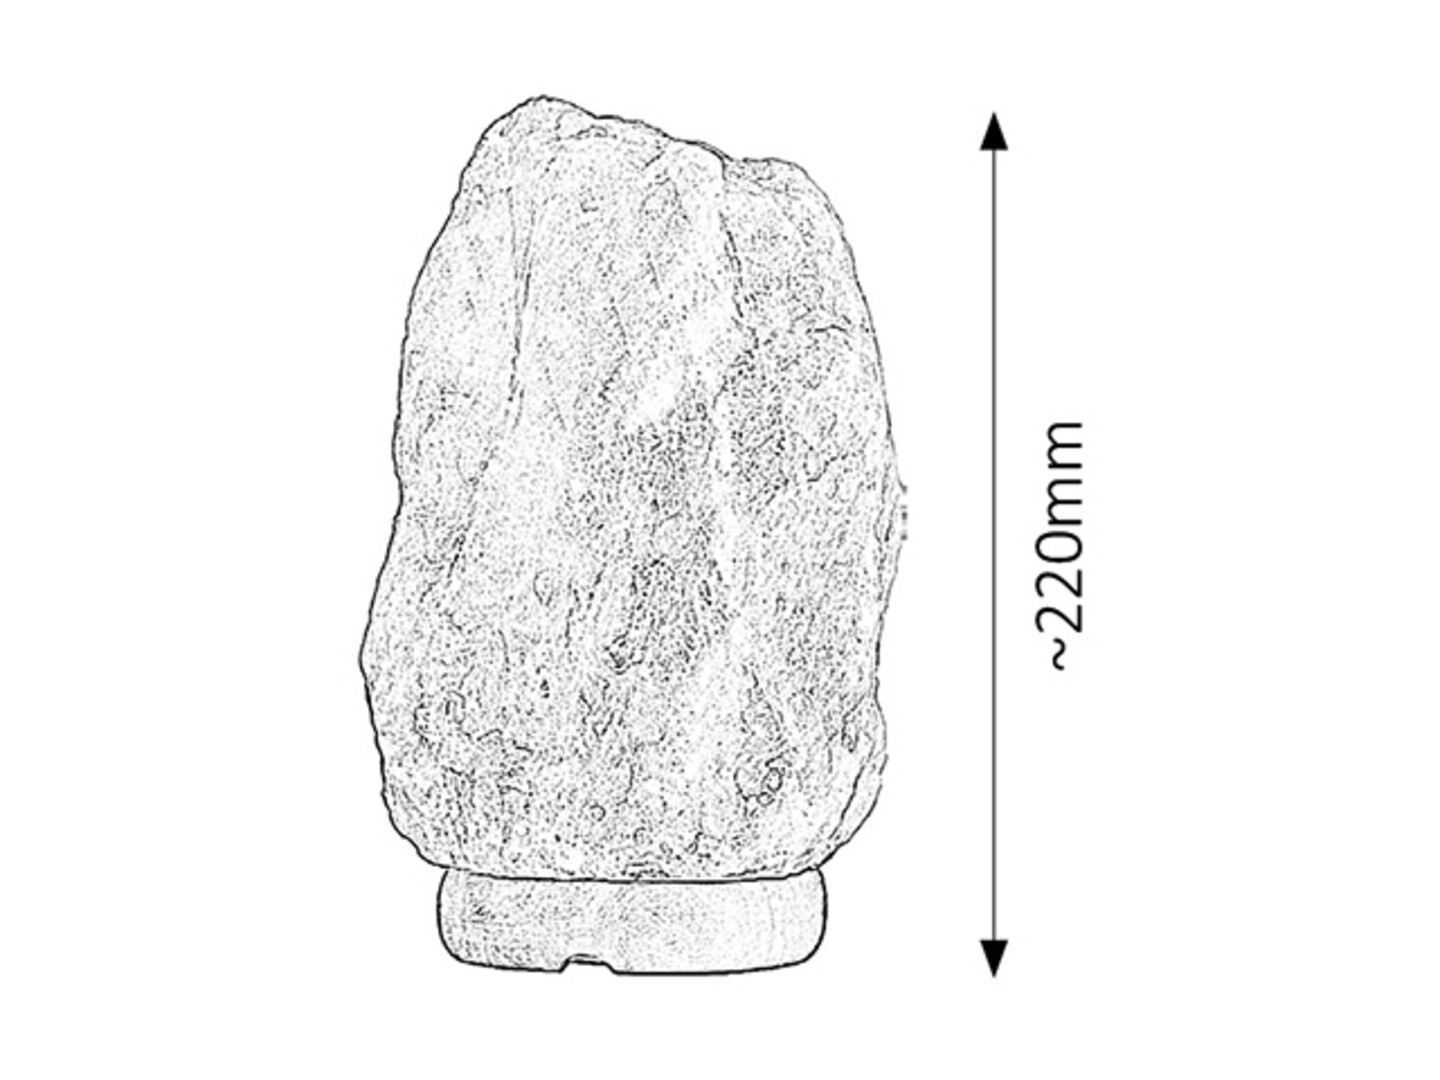 Dekoleuchte Rock 4127, E14, 15W, 2700K, 90lm, Steinsalz-Holz, orange-rot, warmweiß, Innen